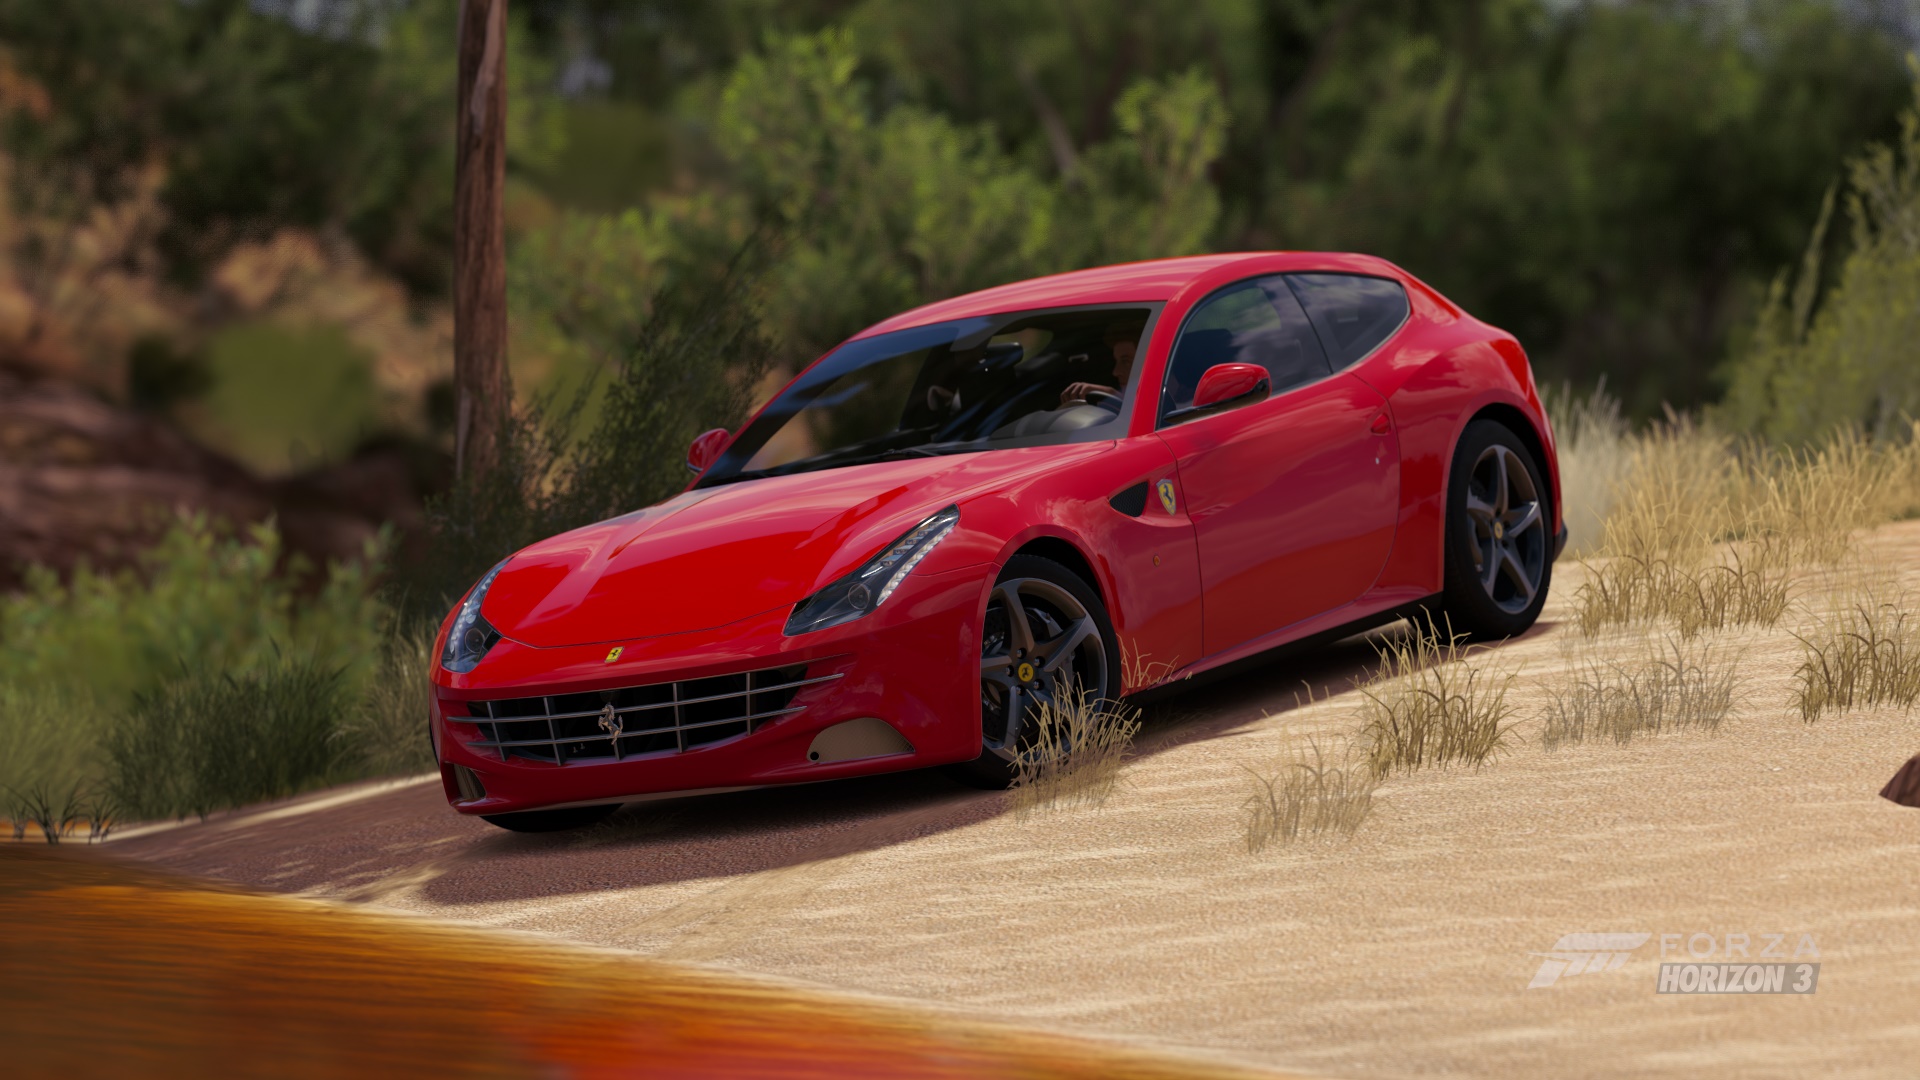 Descarga gratuita de fondo de pantalla para móvil de Ferrari, Fuerza, Videojuego, Forza Horizon 3.